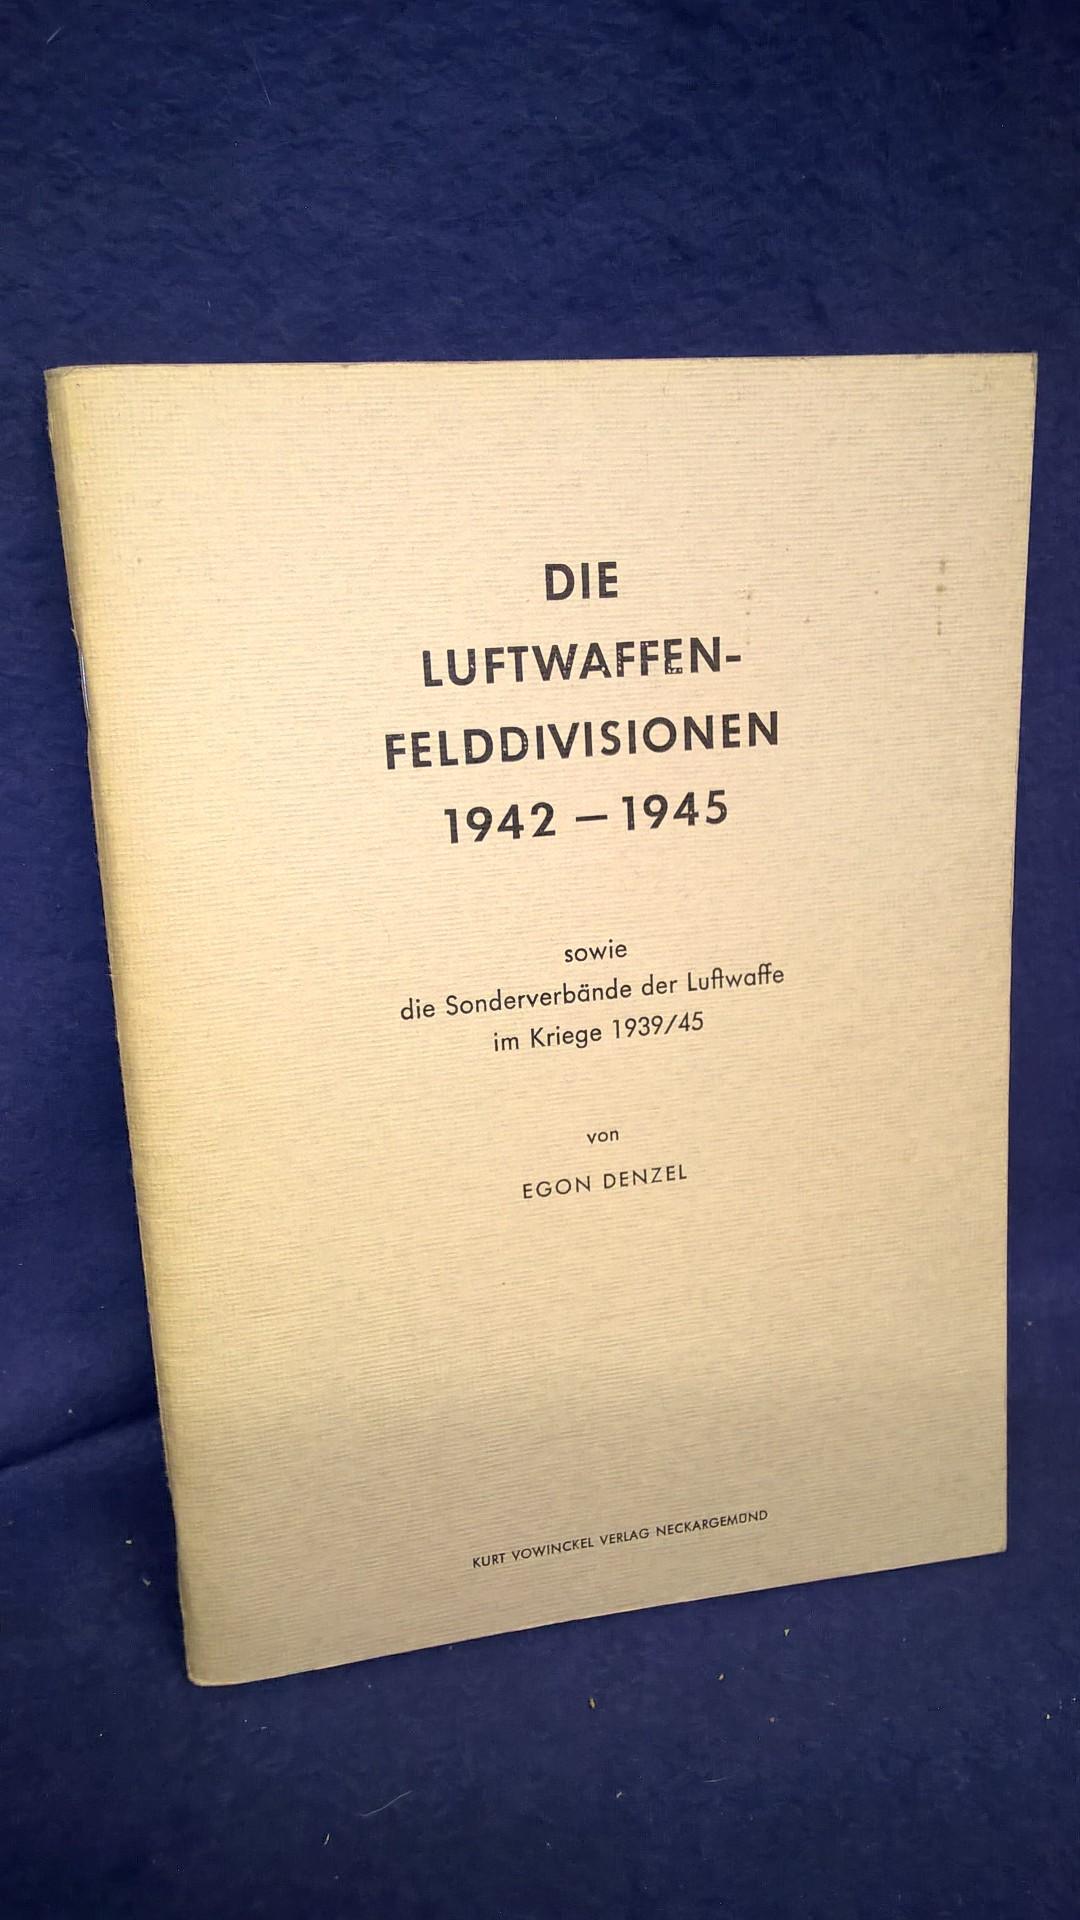 DIE LUFTWAFFEN-FELDDIVISIONEN 1942 - 1945, sowie die Sonderverbände der Luftwaffe im Kriege 1939 /45.